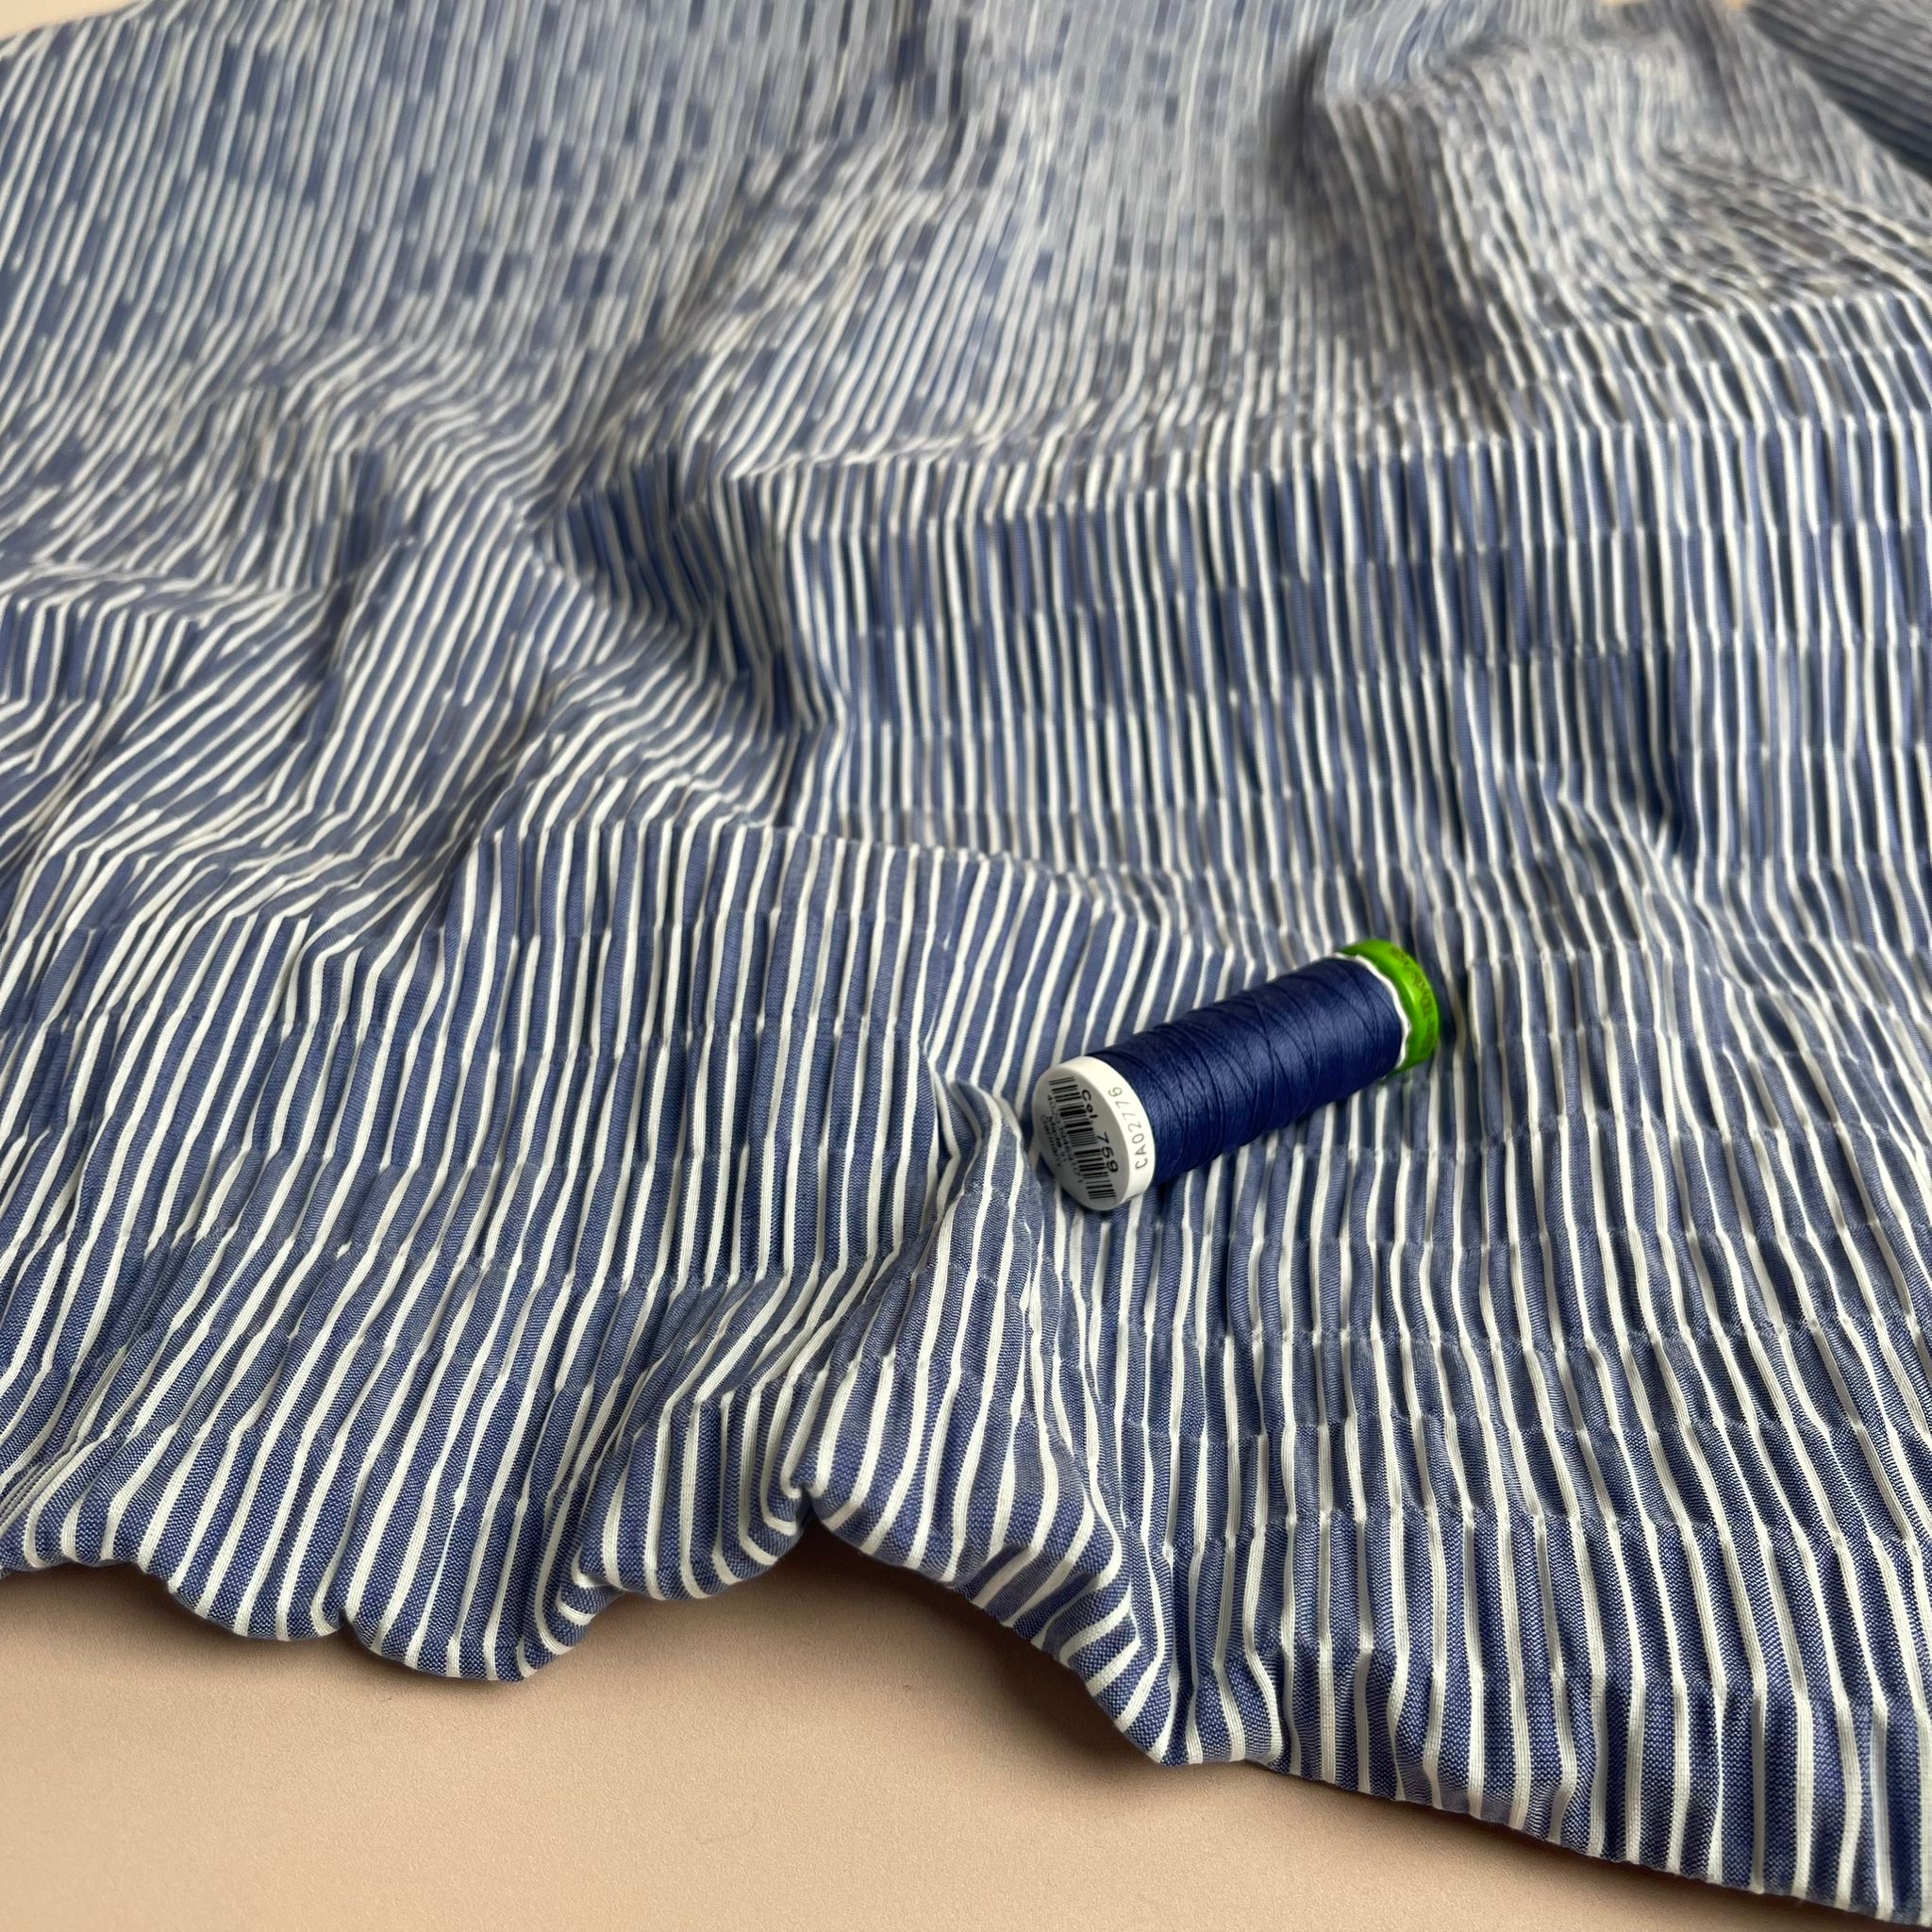 REMNANT 1.36 Metres - Wavy Stripes Cotton Seersucker Fabric